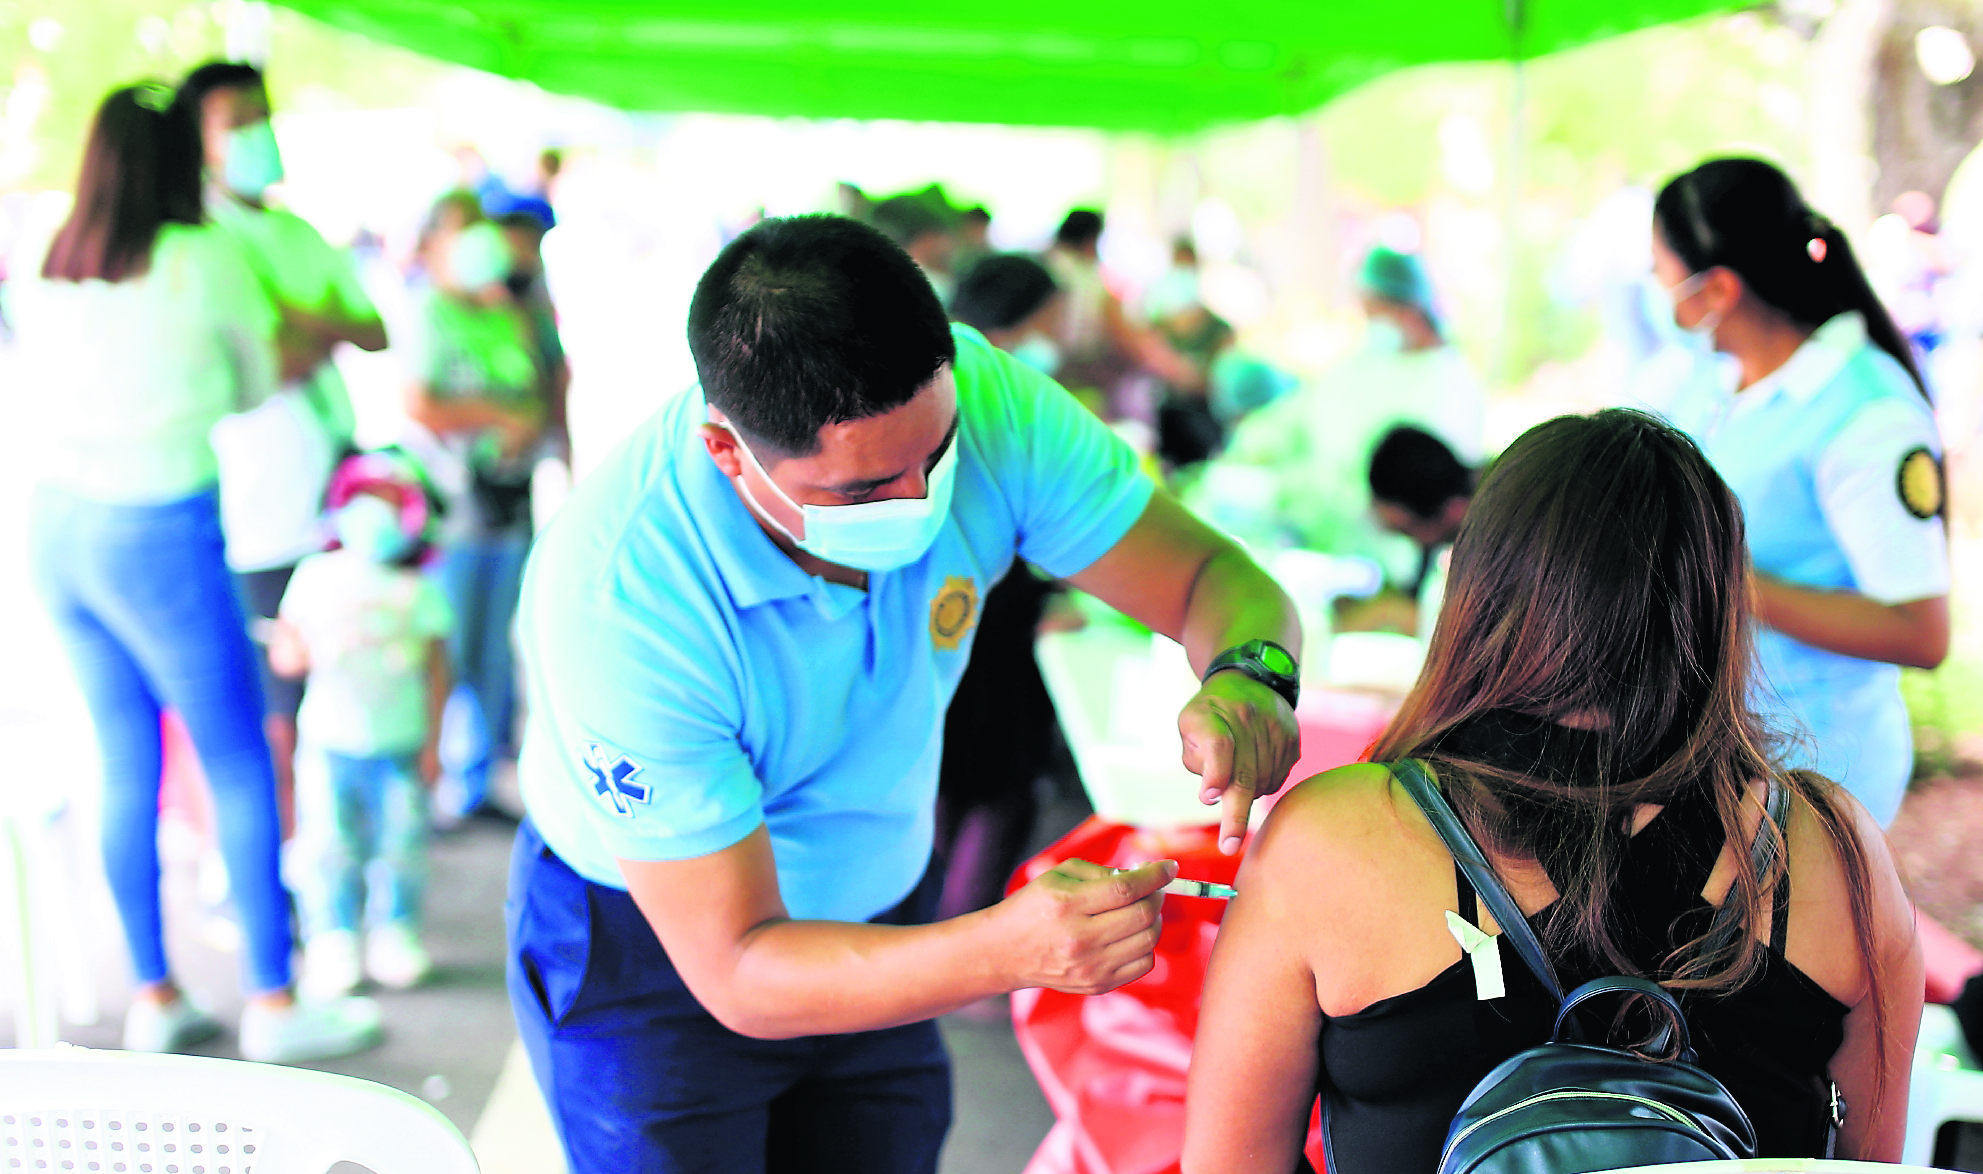 La vacuna Moderna está disponible en todos los centros de salud, afirman delegados del ministerio de Salud. (Foto Prensa Libre: Hemeroteca PL)